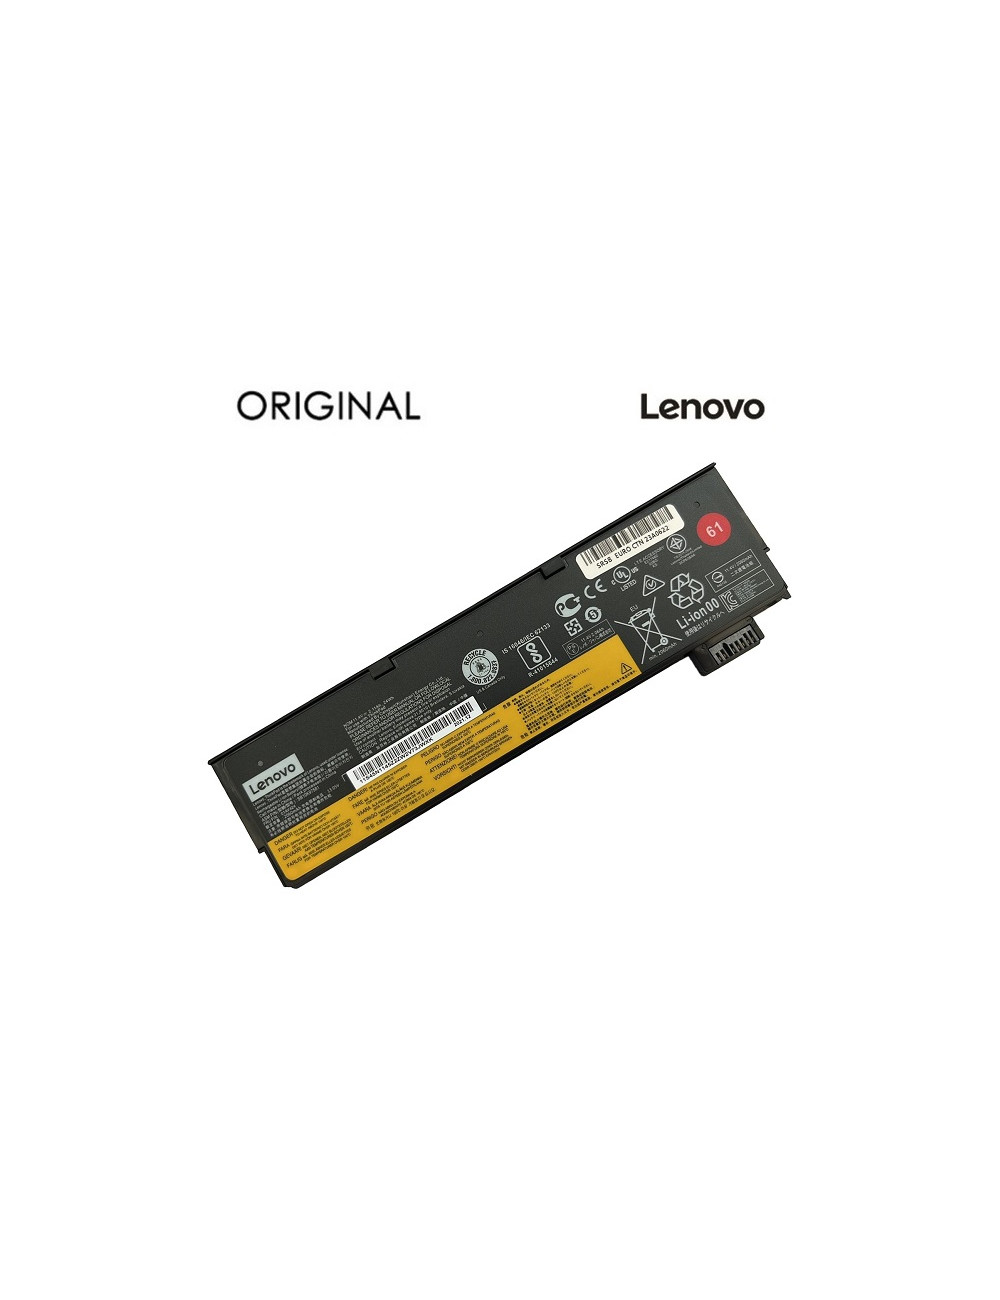 Nešiojamo kompiuterio baterija LENOVO 01AV424, Original, 2110mAh